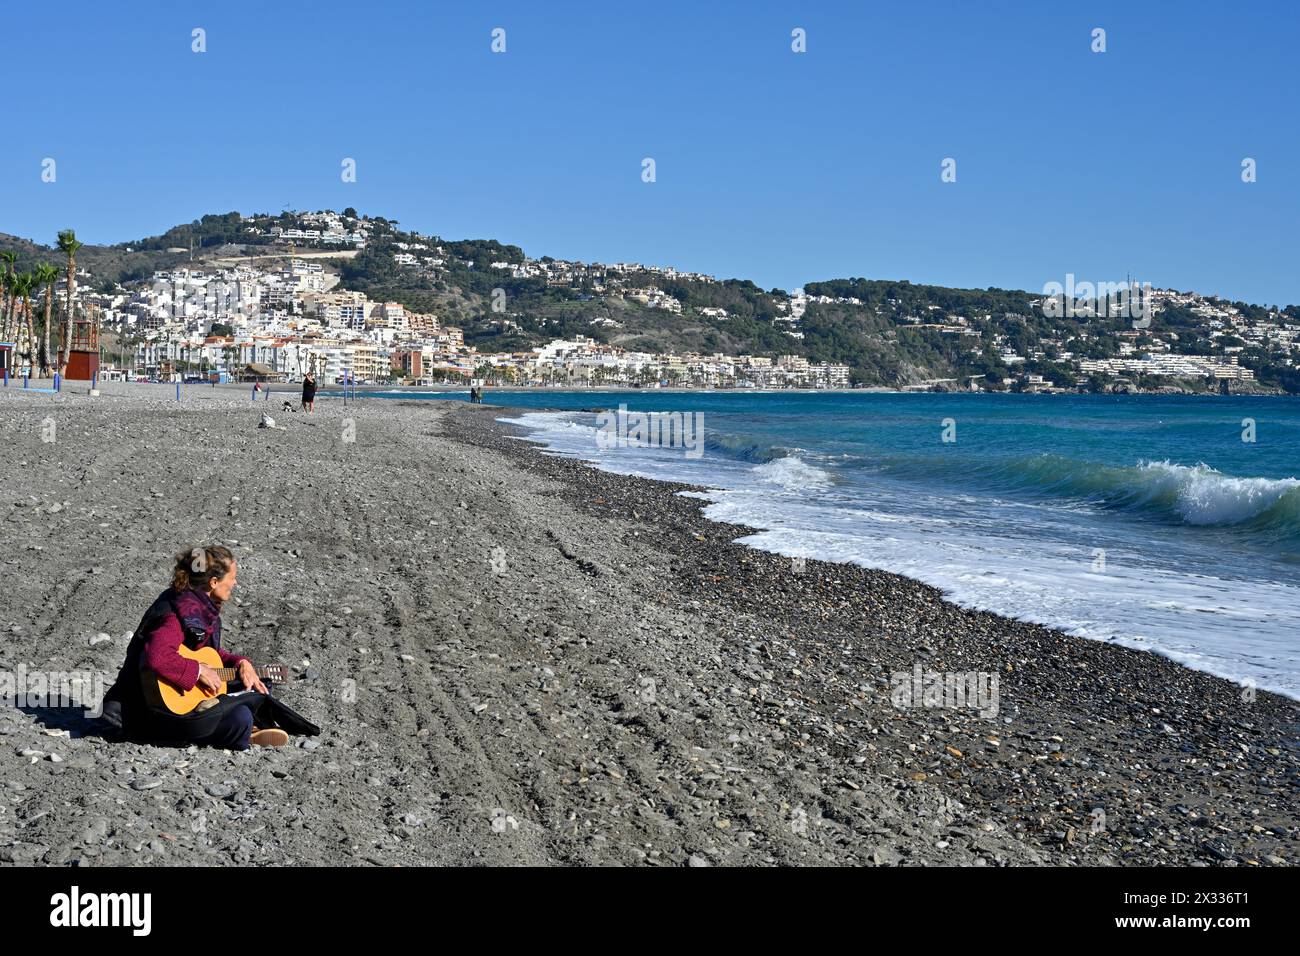 Vue le long de la plage de la station balnéaire de la Herradura le long de la côte méditerranéenne tropicale de l'Espagne hors saison Banque D'Images